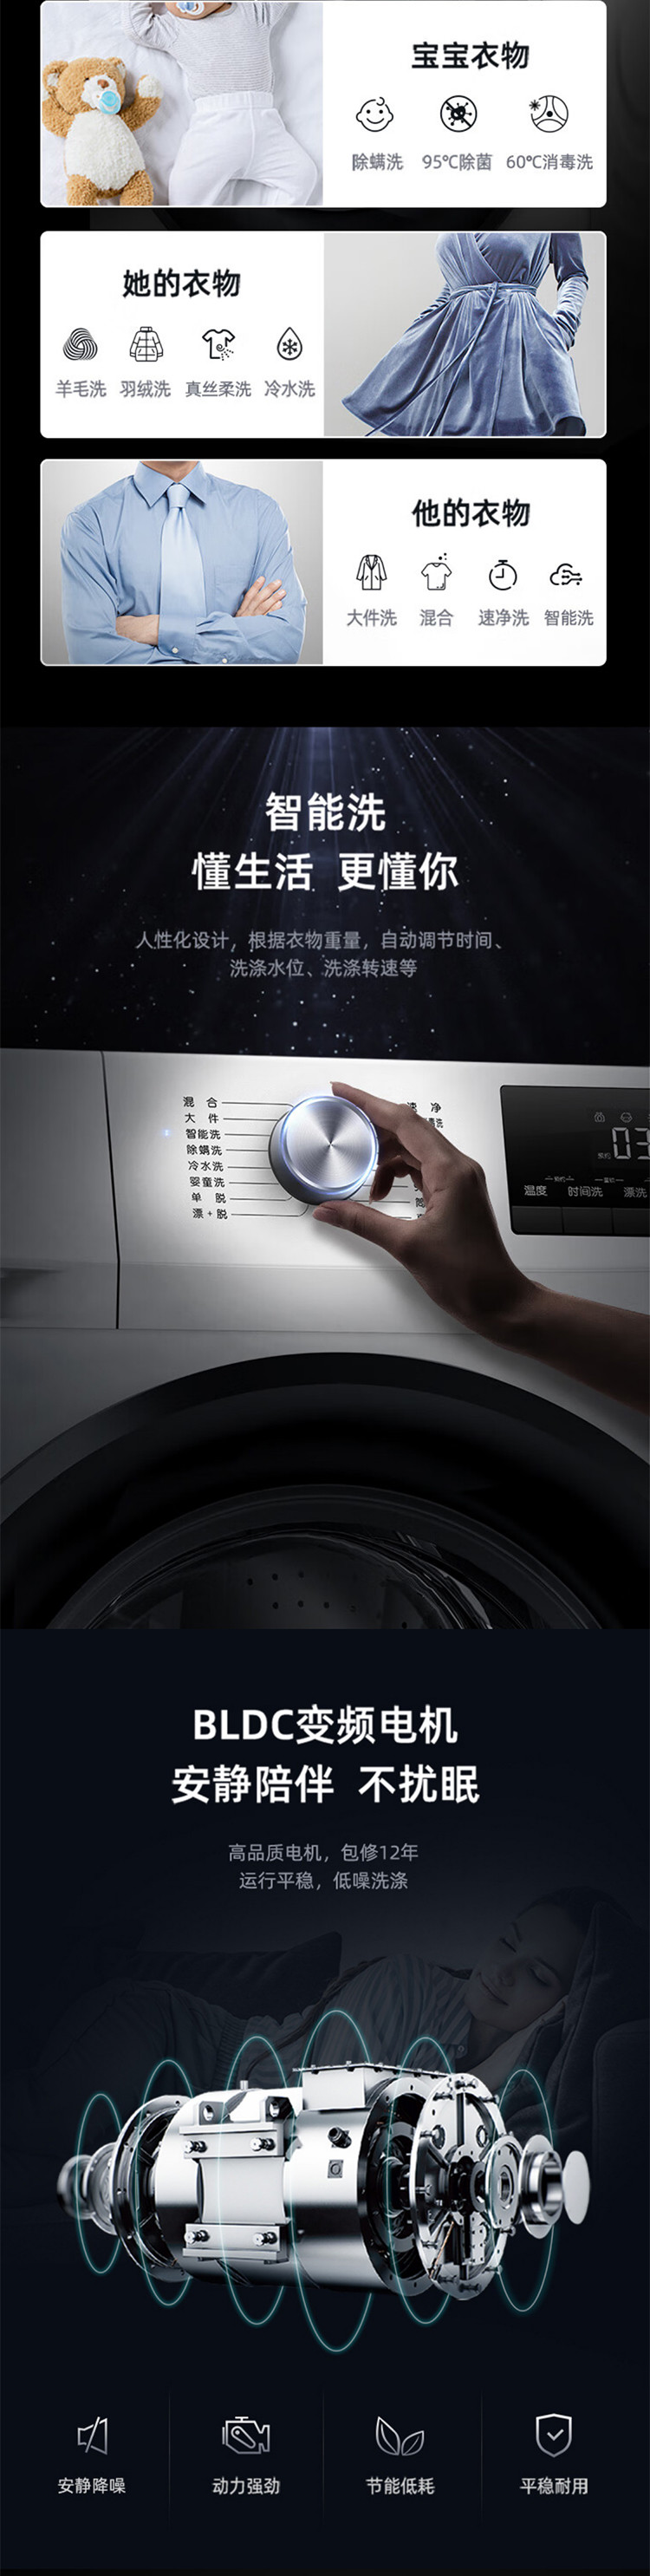 海信/Hisense 8公斤全自动滚筒宿舍家用洗衣机 8KG